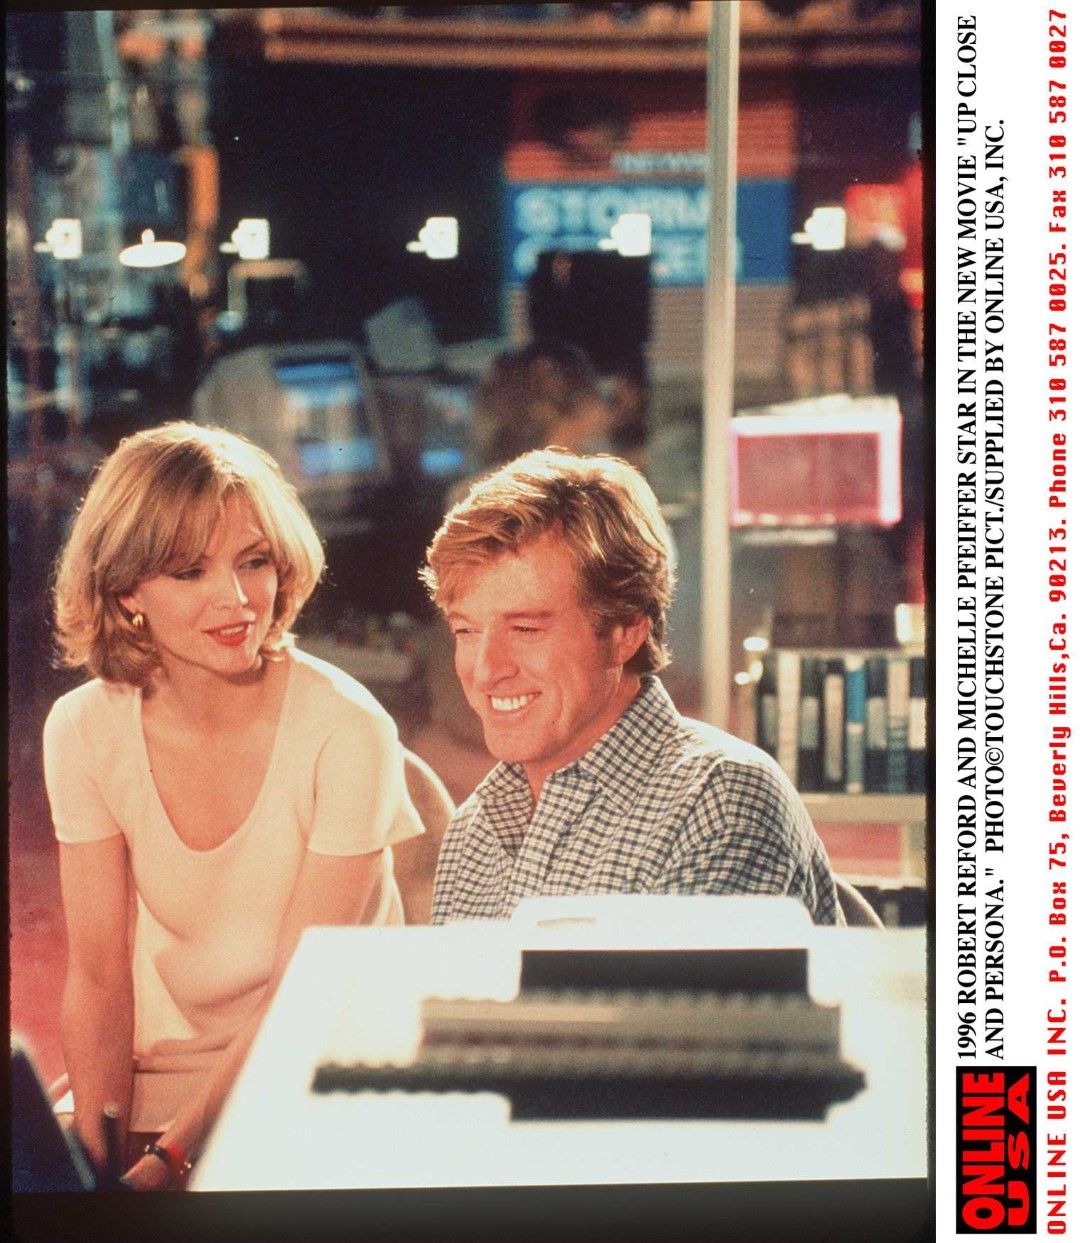 Робърт Редфорд и Мишел Пфайфър във филма "Поверително и лично" (1996)